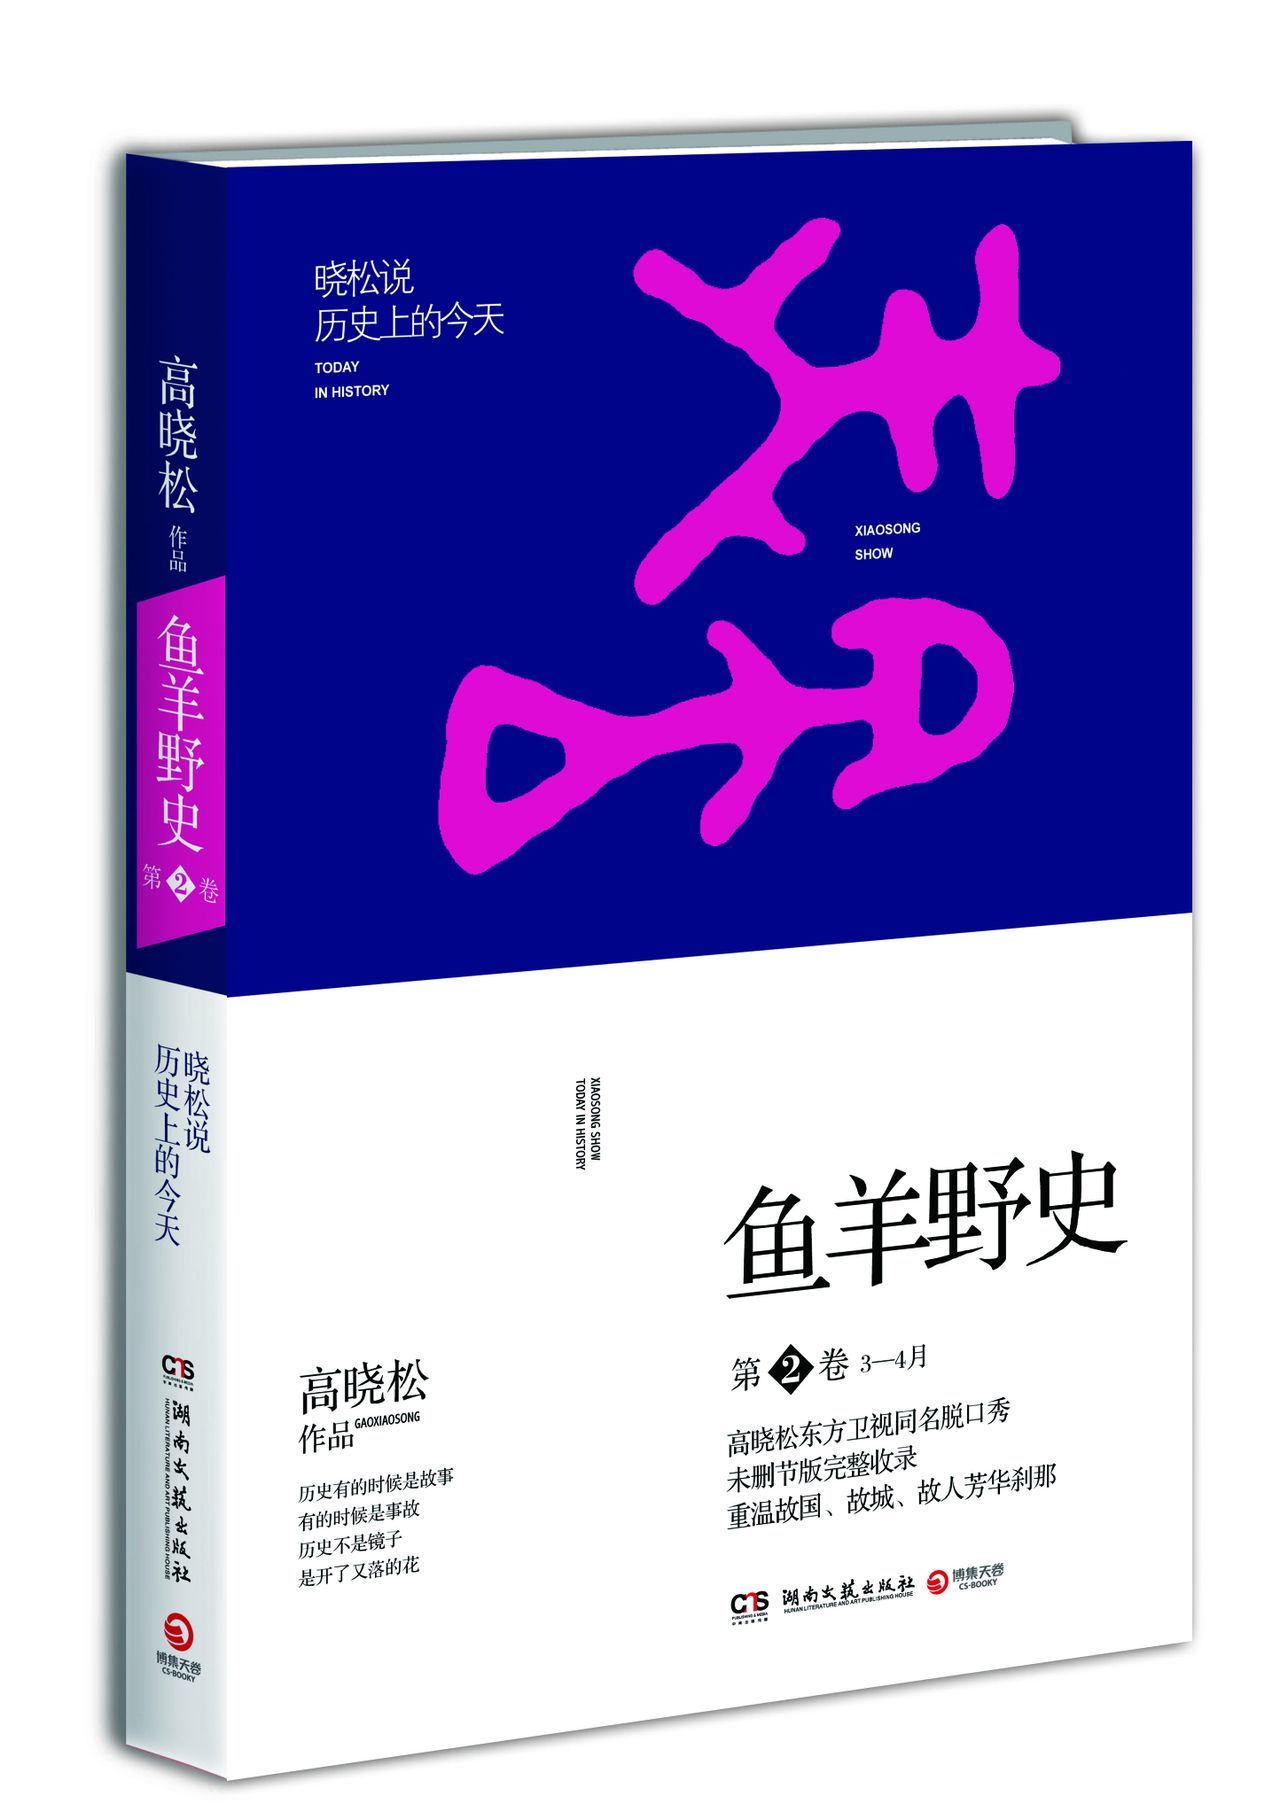 鱼羊野史 - 球换宽营燃两2014年湖南文艺出版社出版的图书  免费编辑   修改义项名